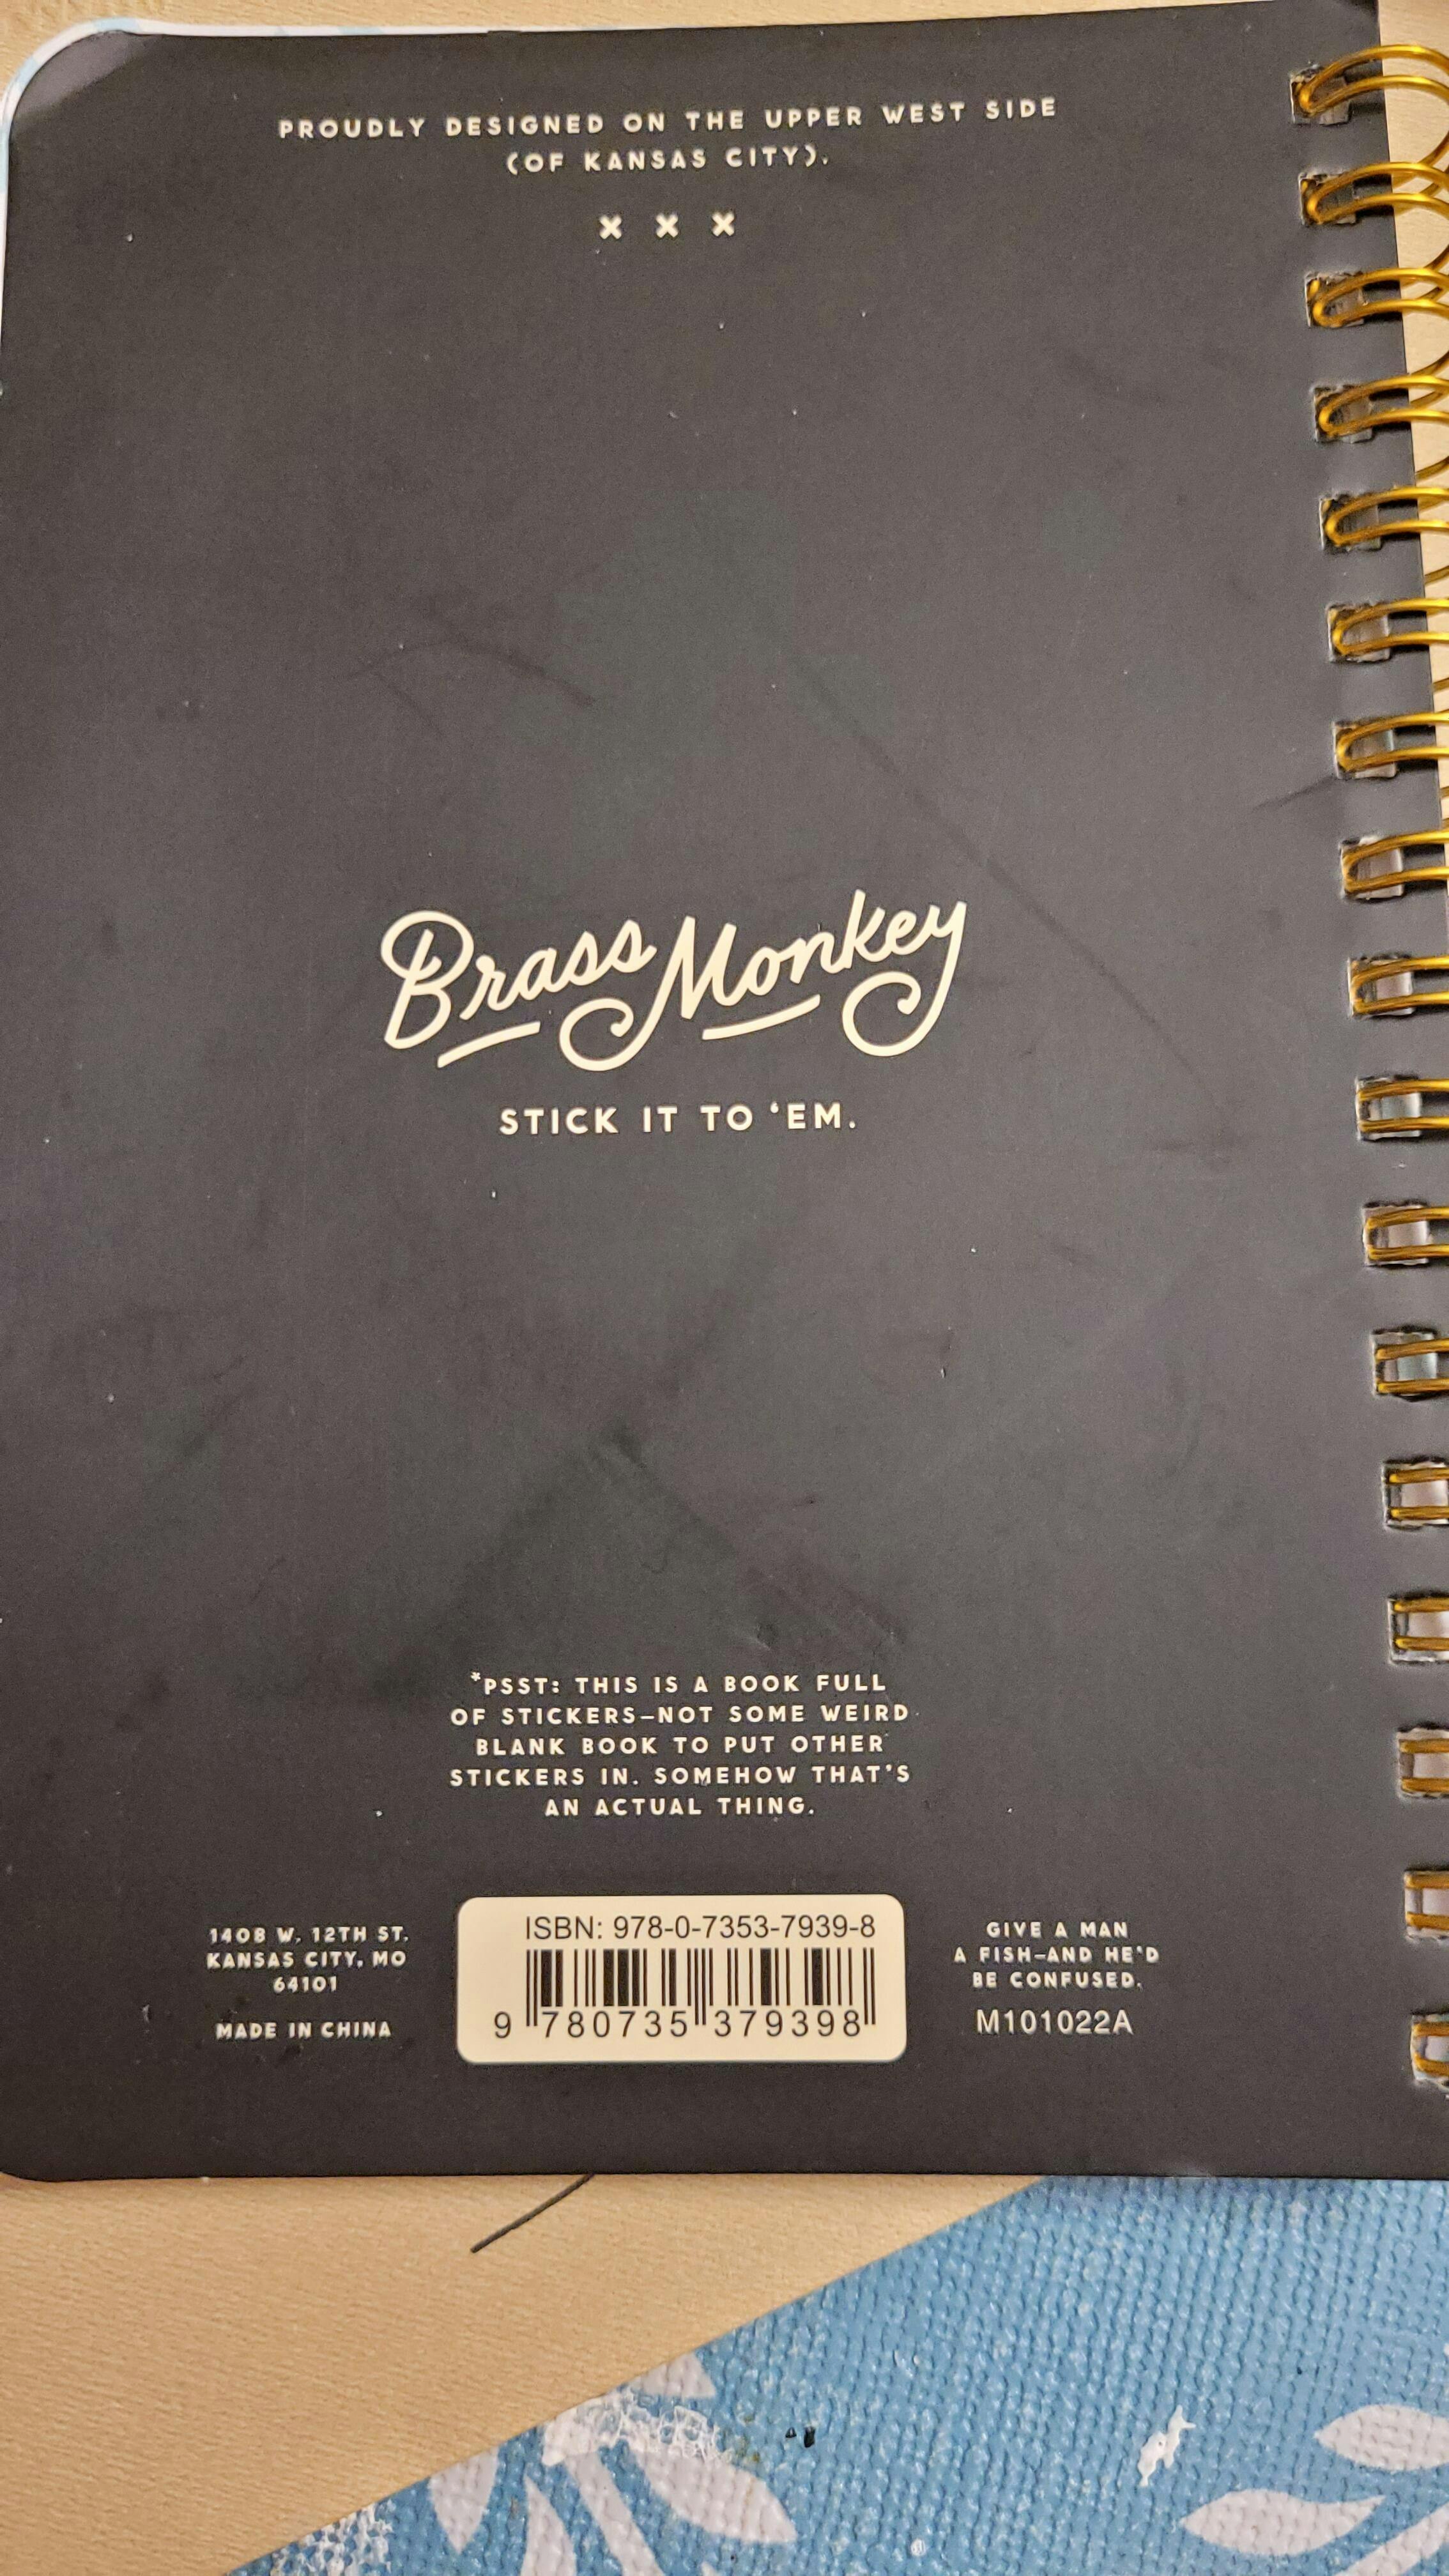 In A Mood Sticker Book – Brass Monkey